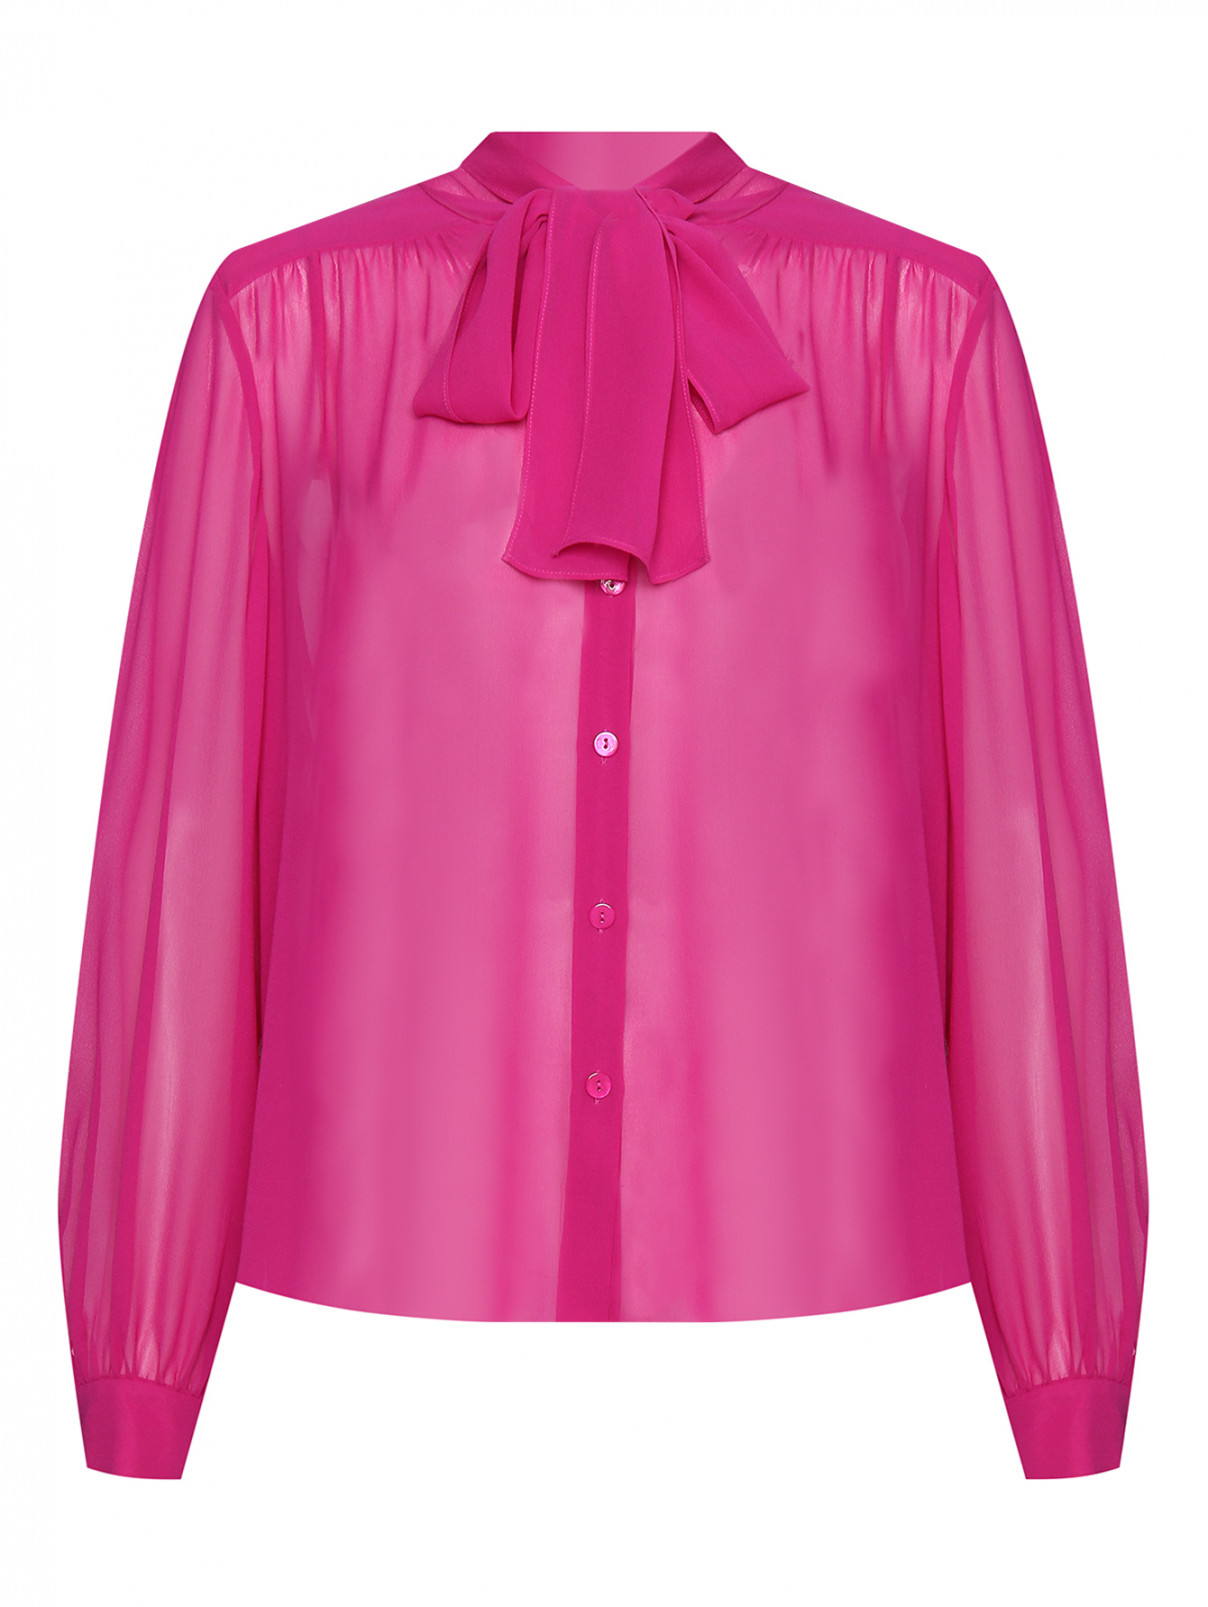 Блуза из шелка однотонная с бантом Luisa Spagnoli  –  Общий вид  – Цвет:  Фиолетовый